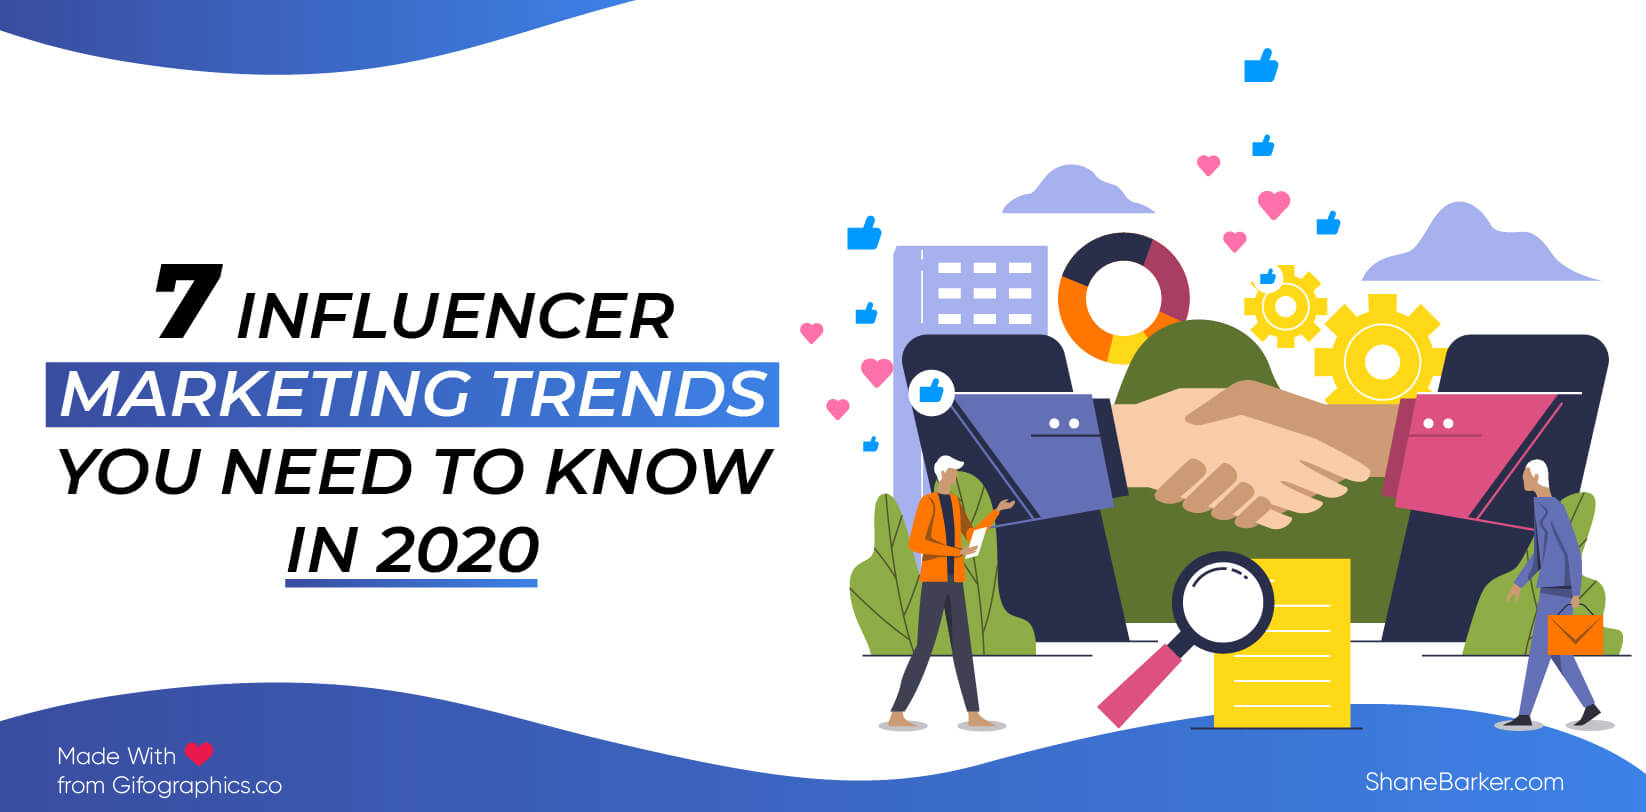 7 trendów w influencer marketingu, które musisz znać w 2020 roku (aktualizacja z października)